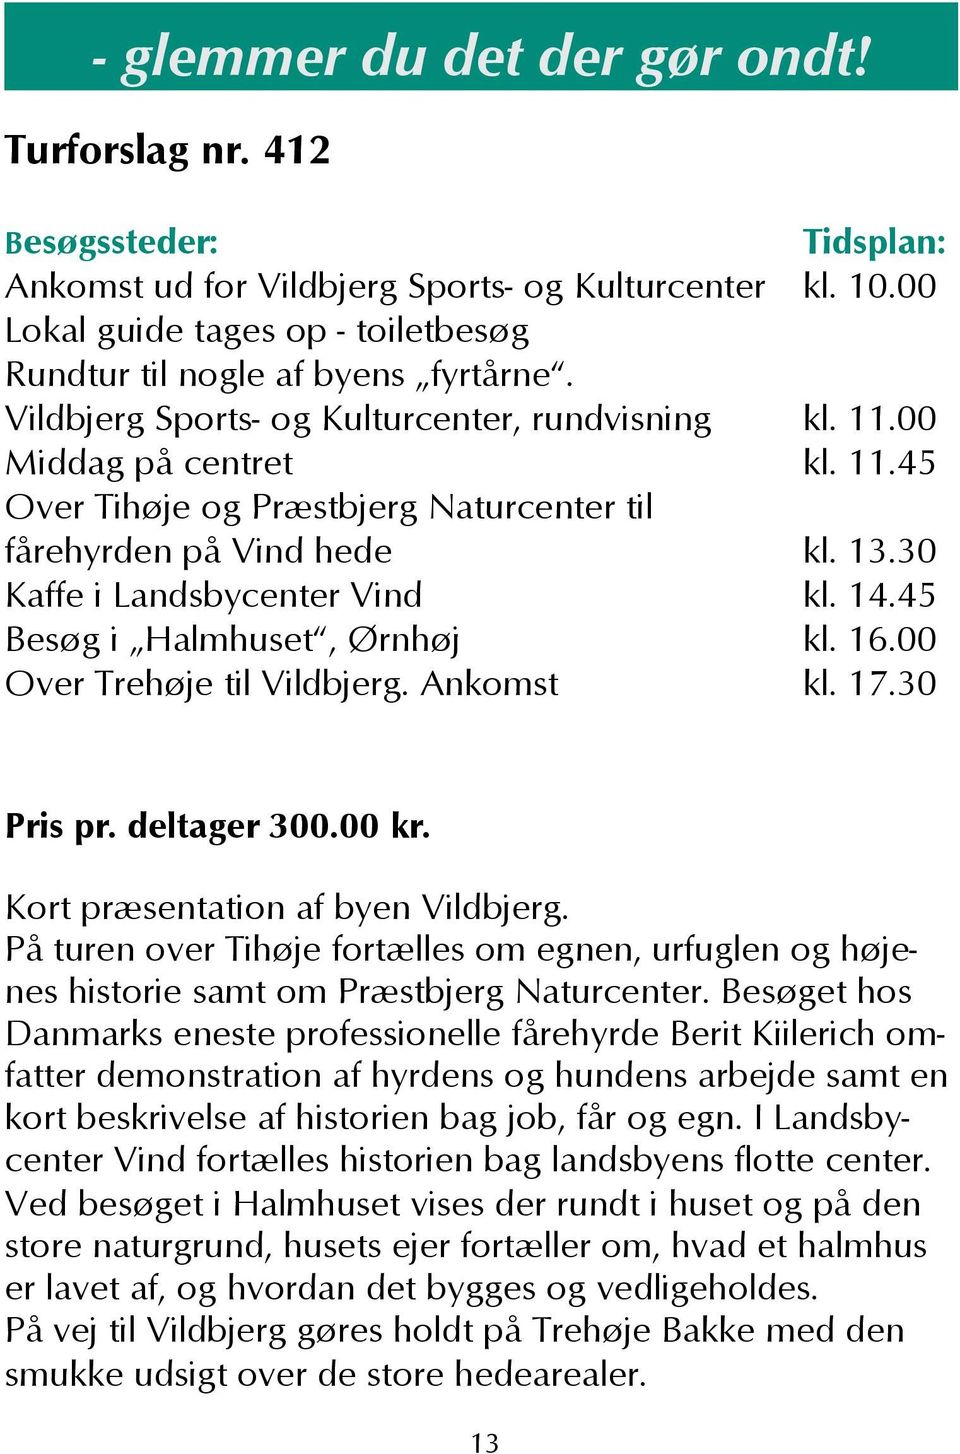 45 Besøg i Halmhuset, Ørnhøj kl. 16.00 Over Trehøje til Vildbjerg. Ankomst kl. 17.30 Pris pr. deltager 300.00 kr. Kort præsentation af byen Vildbjerg.